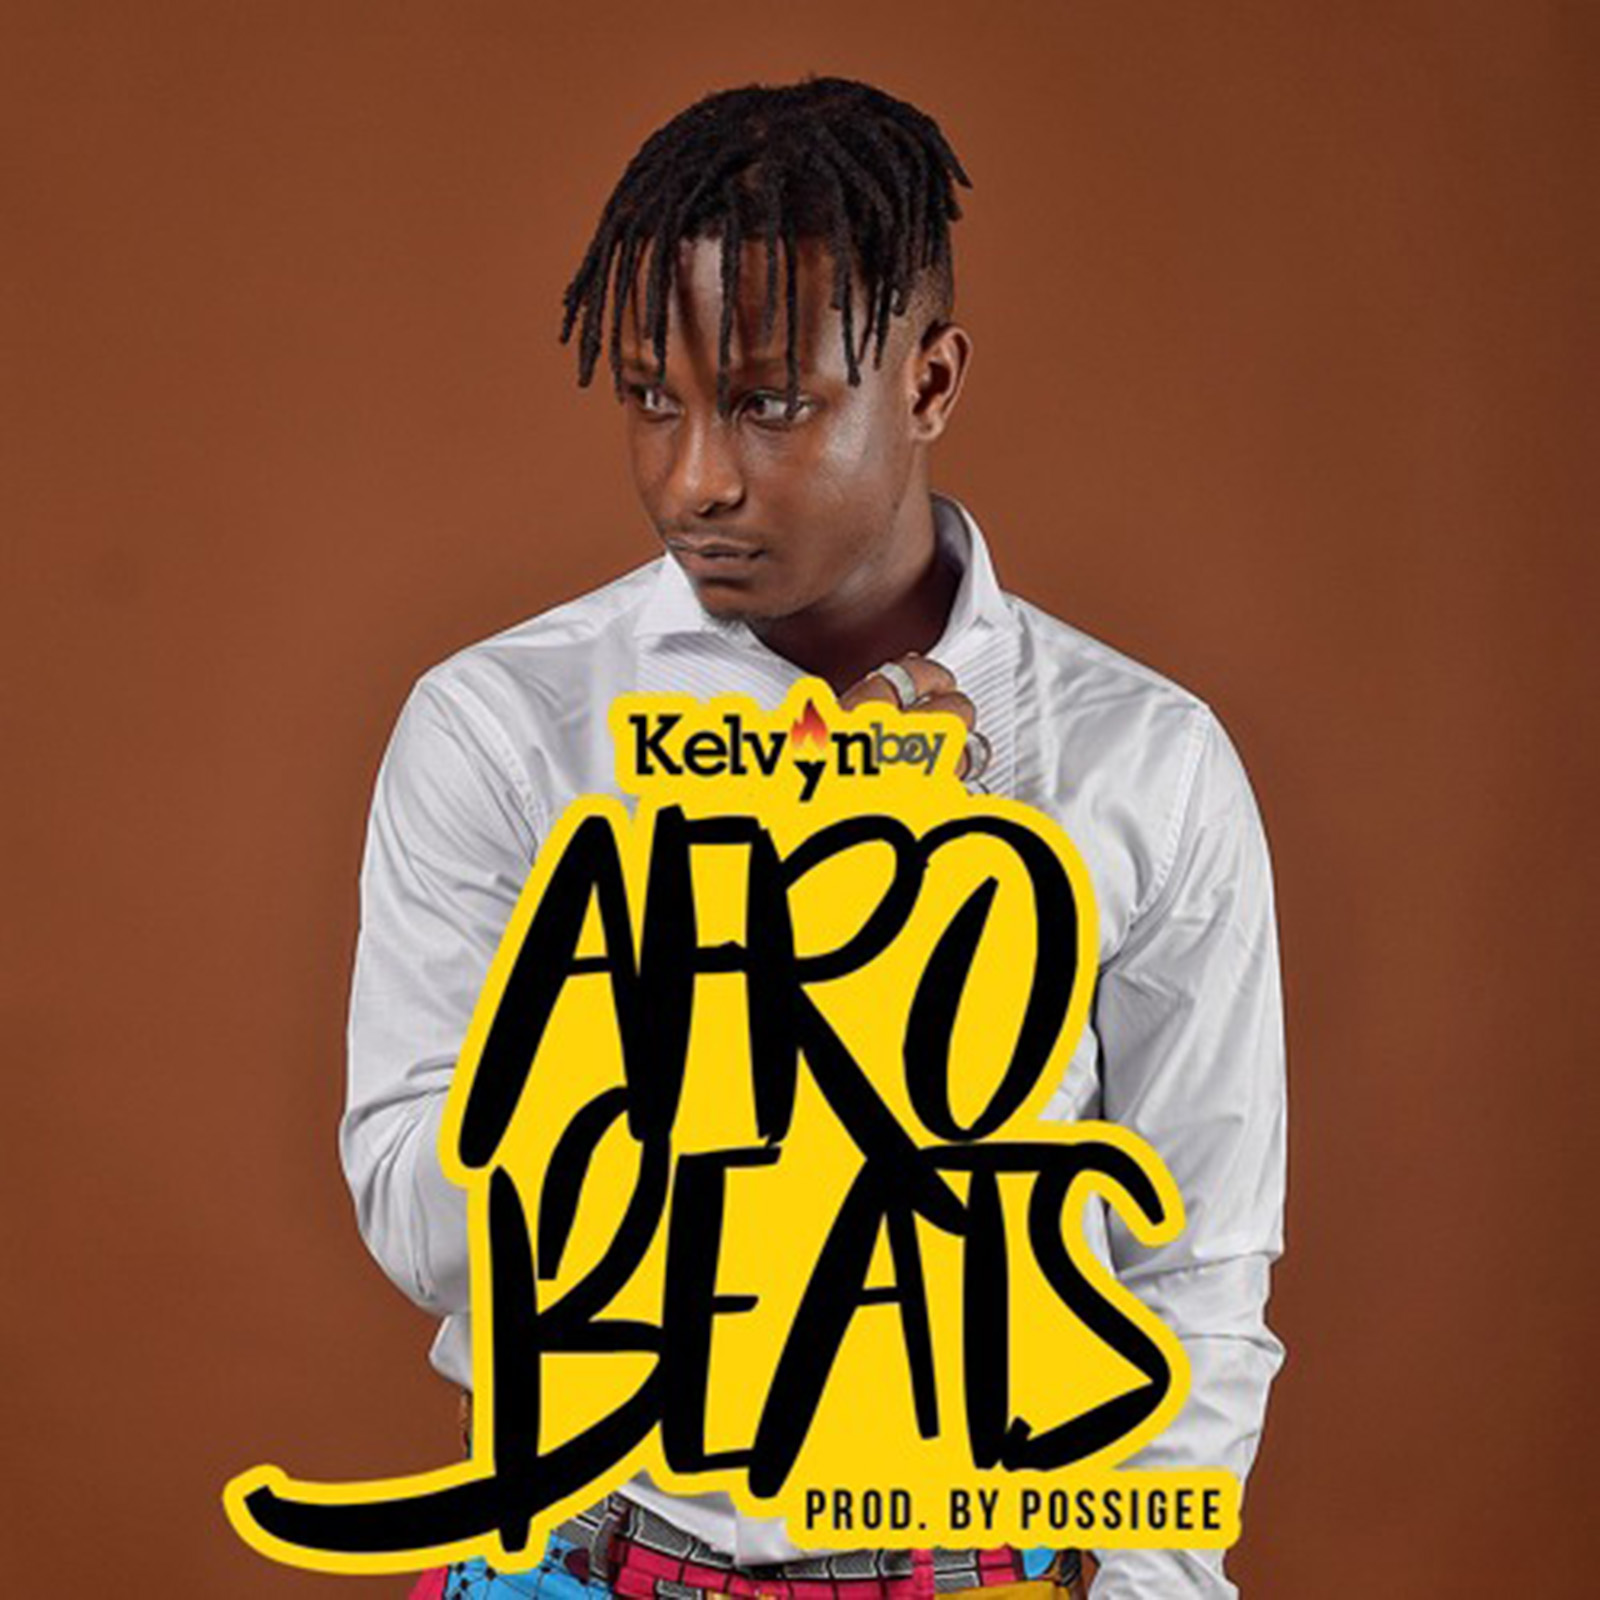 Afrobeats by Kelvynboy